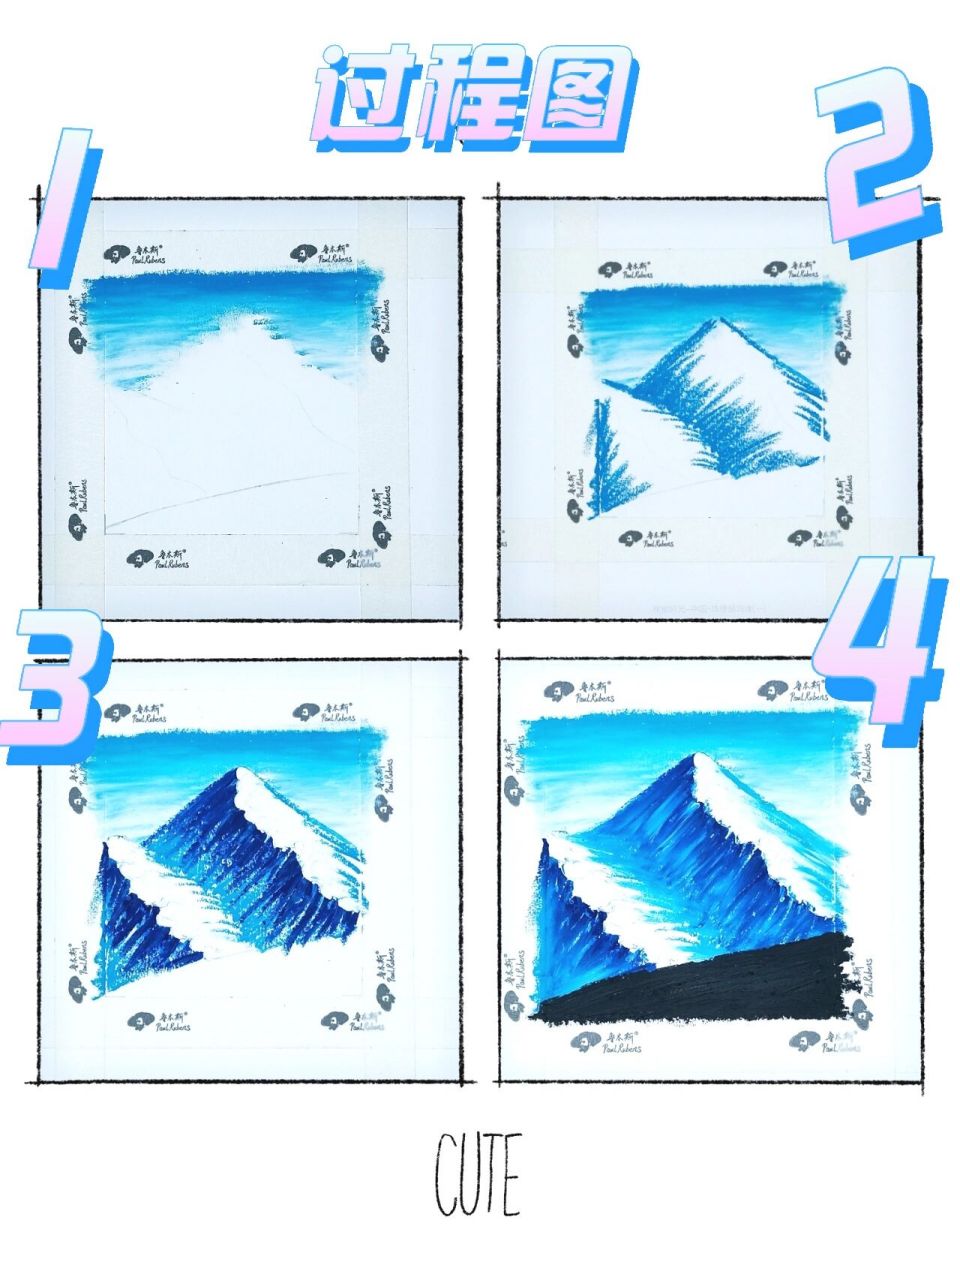 珠穆朗玛峰画画图片图片